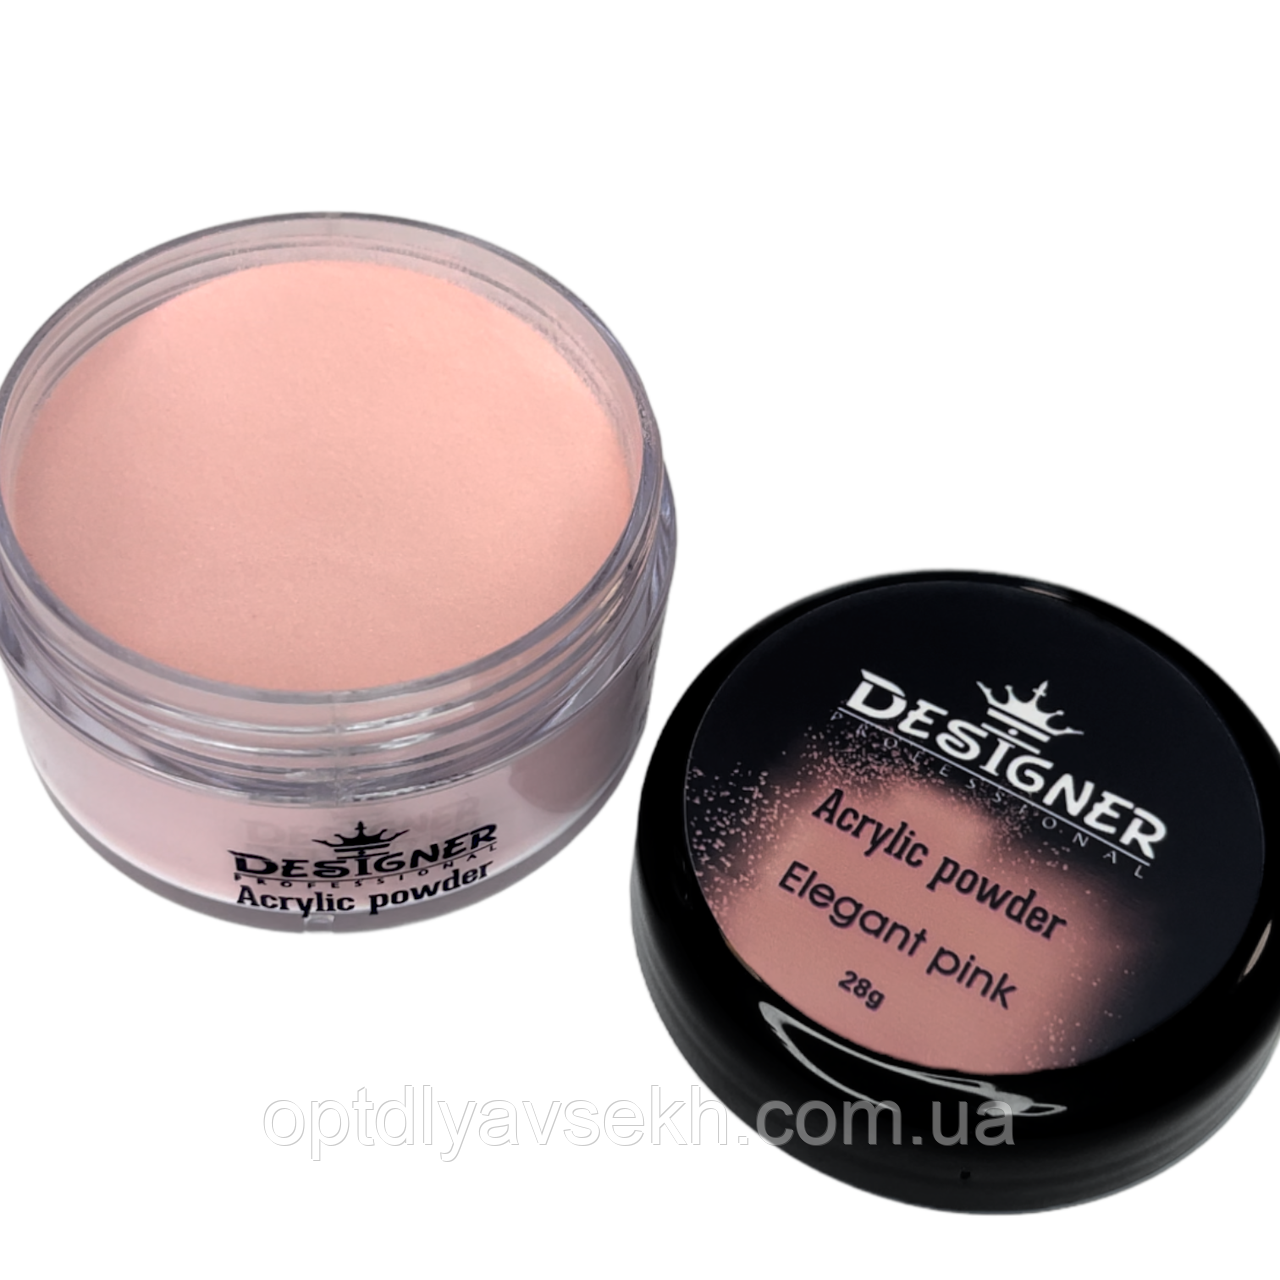 Акрилова пудра/Acrylic powder 28 г. для зміцнення нігтів та акрилового нарощування Дизайнер Elegant pink